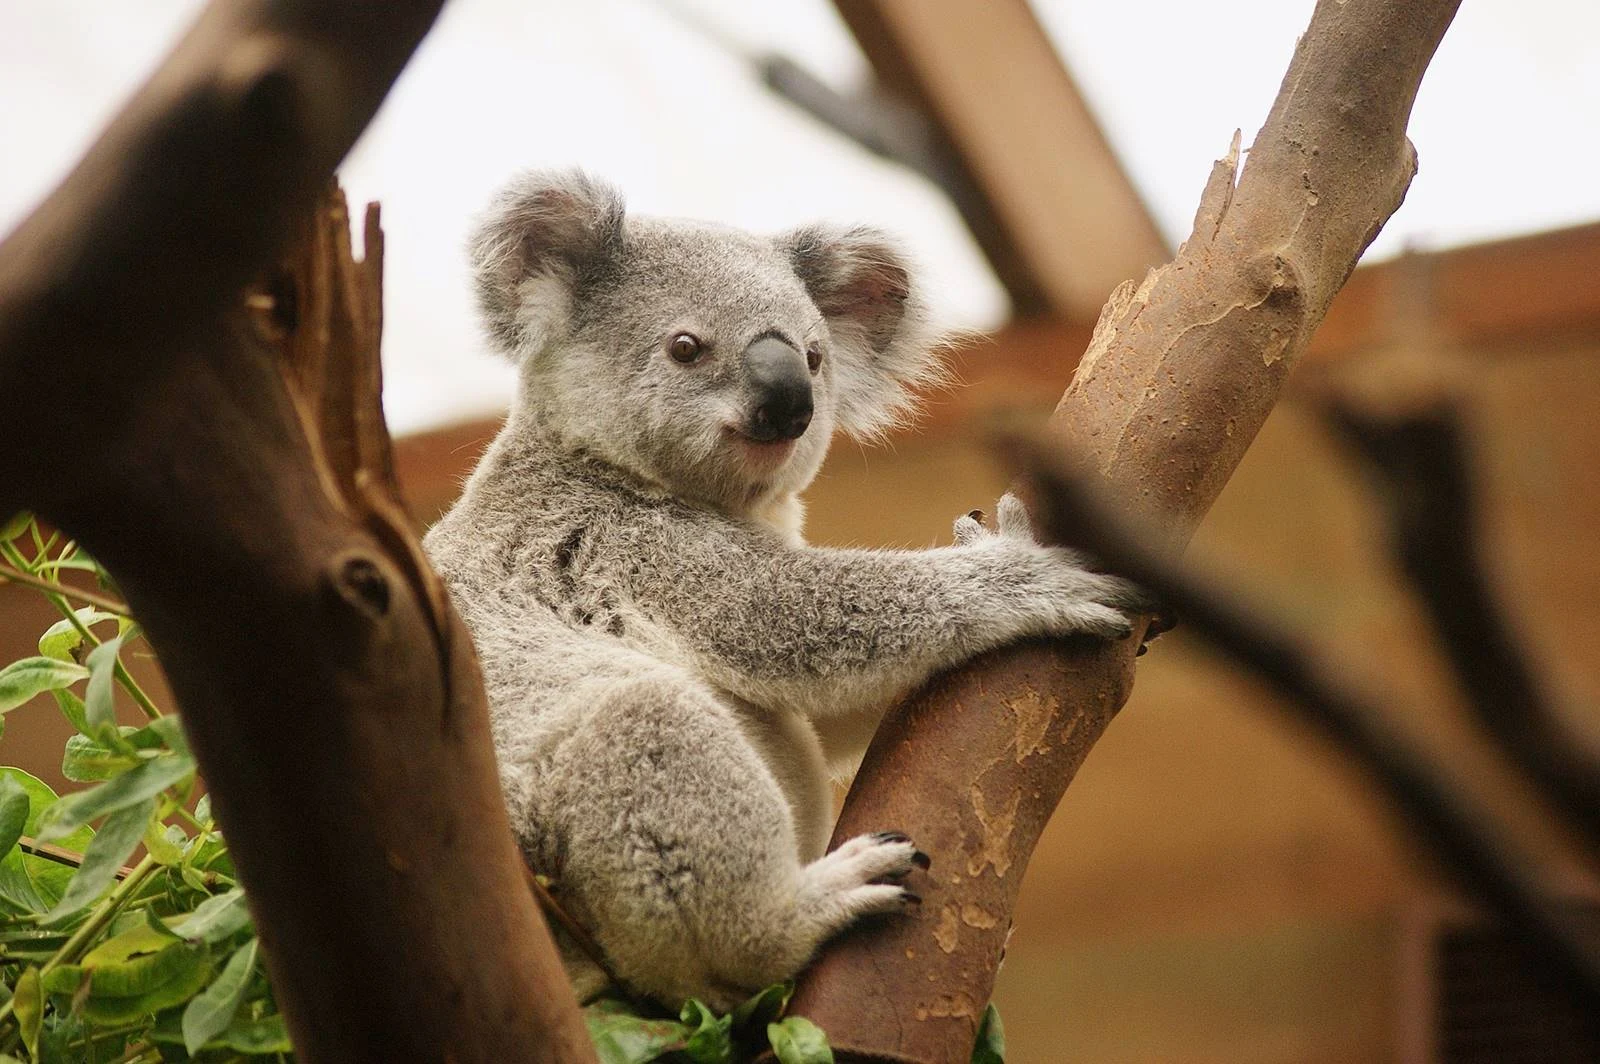 澳洲-墨爾本-市區-墨爾本景點-推薦-墨爾本動物園-Melbourne-Zoo-行程-墨爾本旅遊-墨爾本自由行-攻略-遊記-墨爾本一日遊-墨爾本必去景點-Melbourne